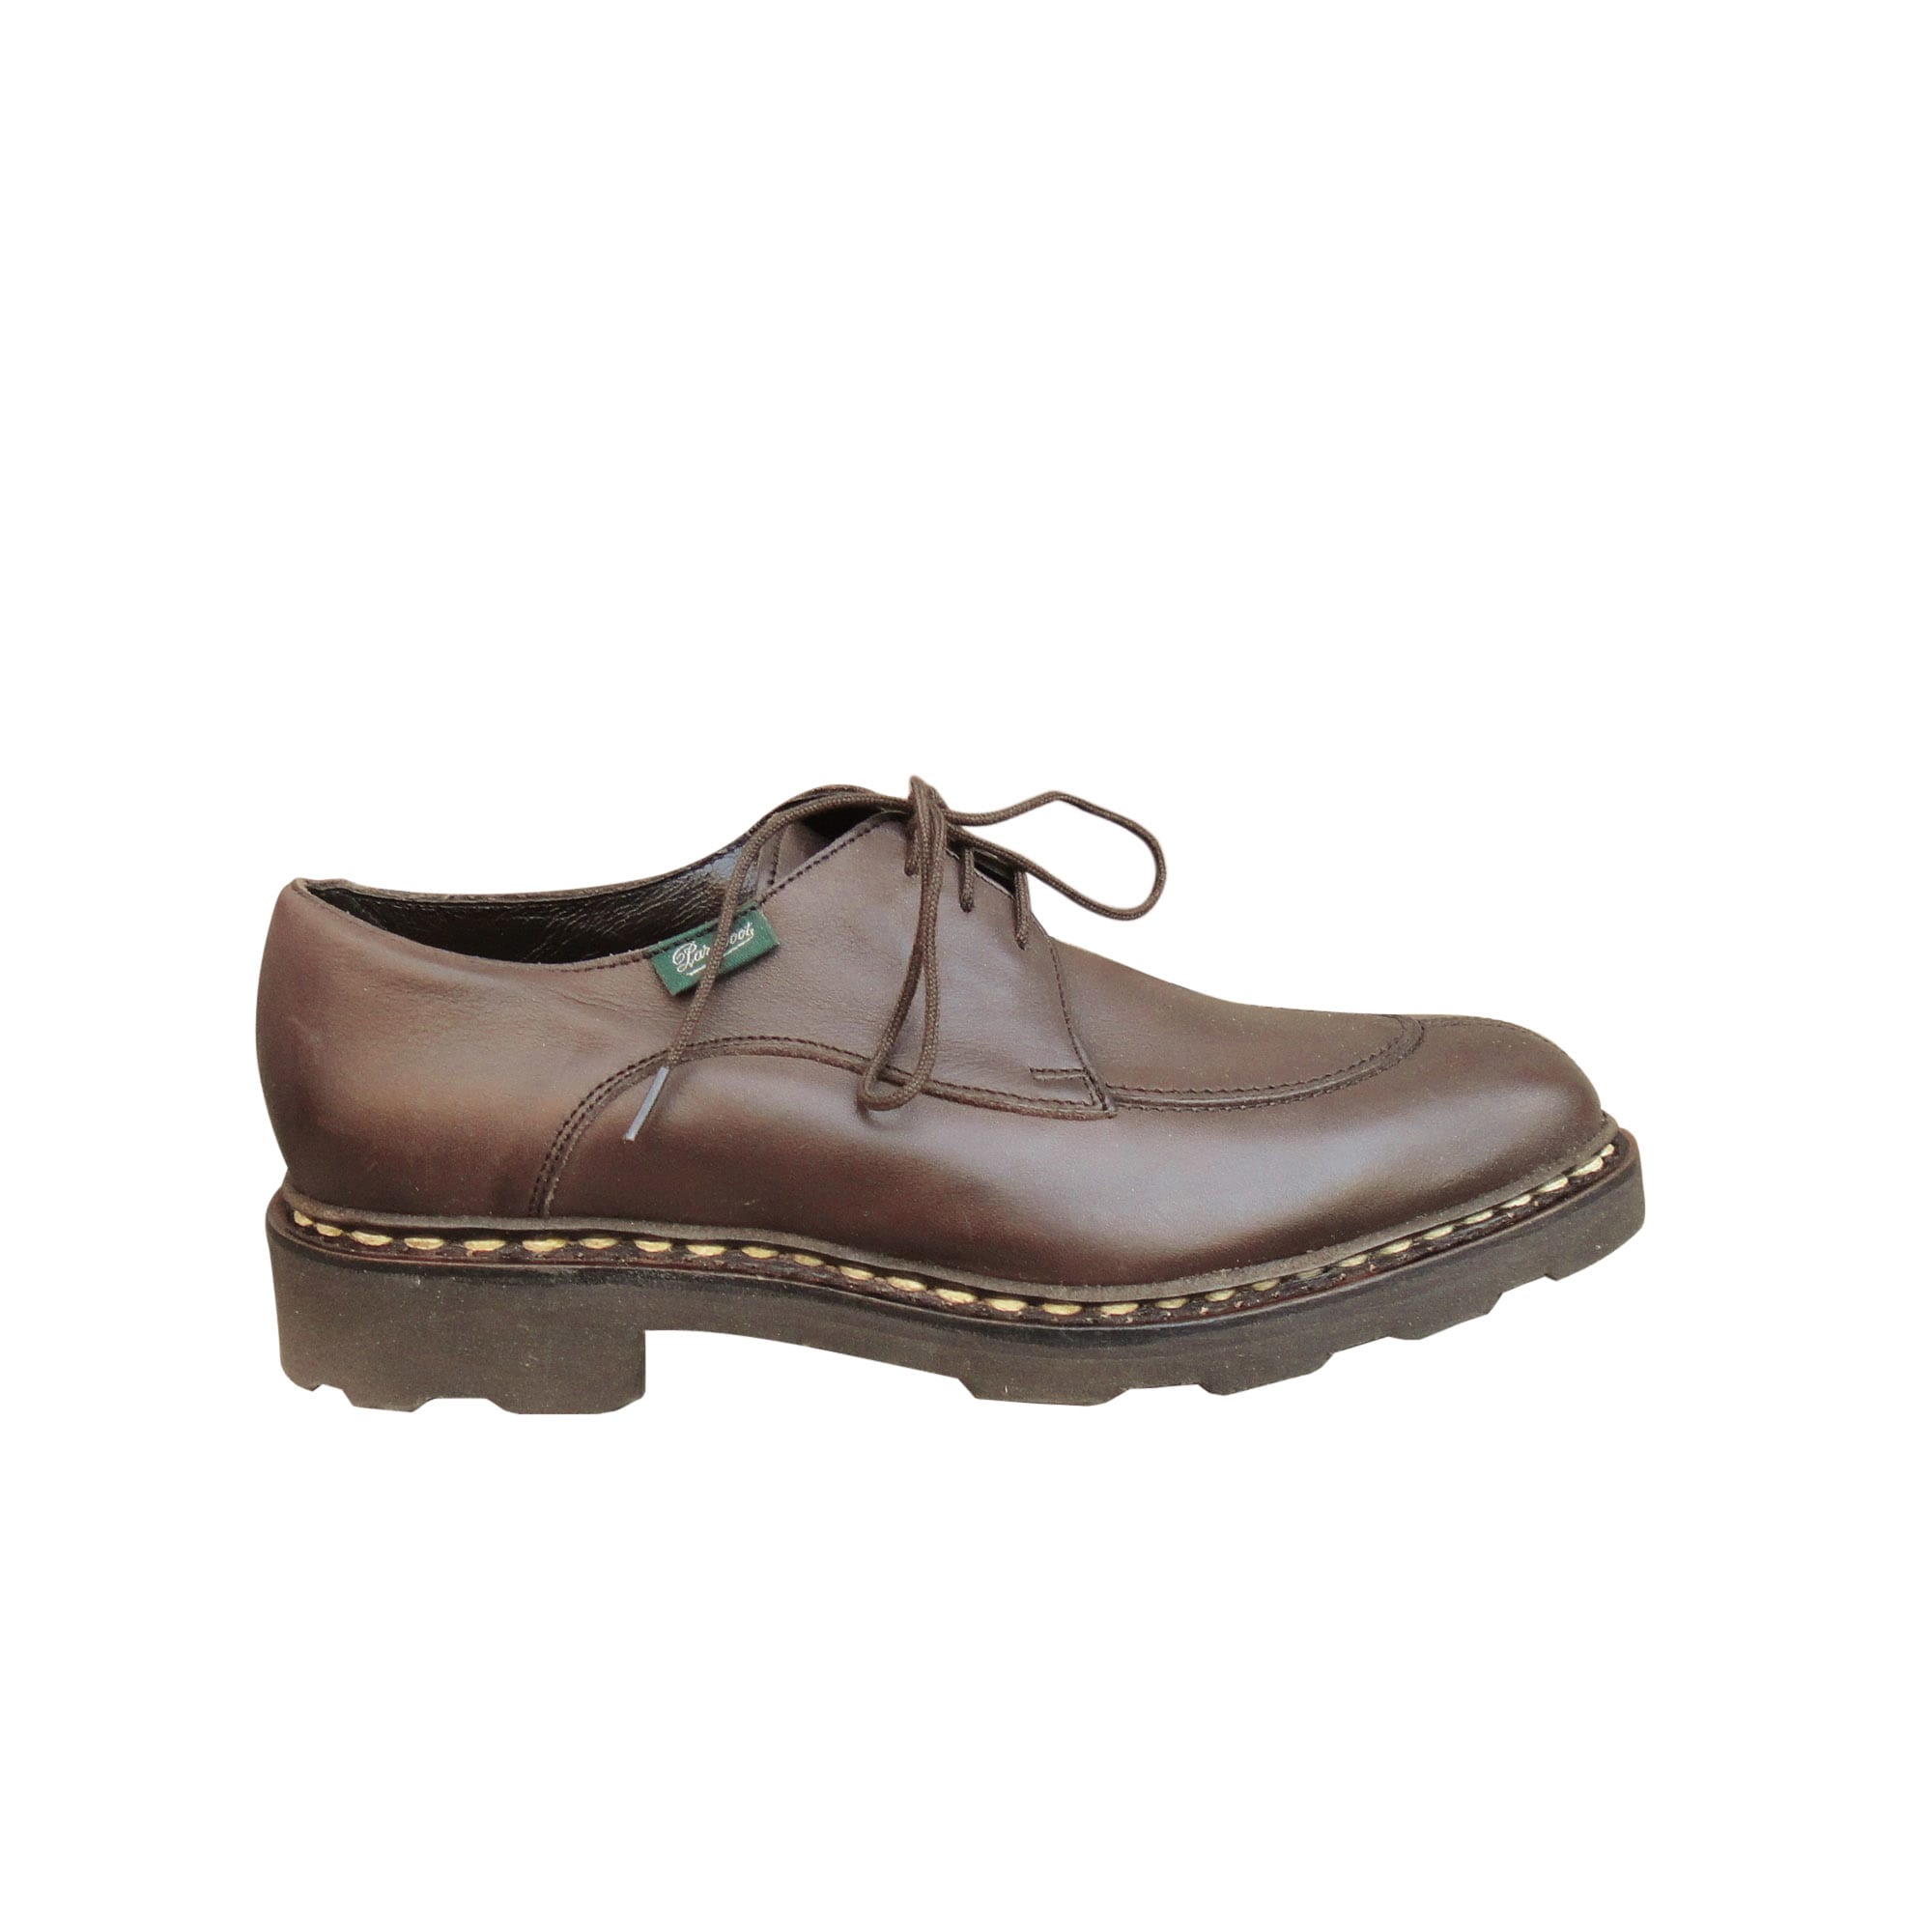 Chaussures à lacets PARABOOT 35 marron - 7621226